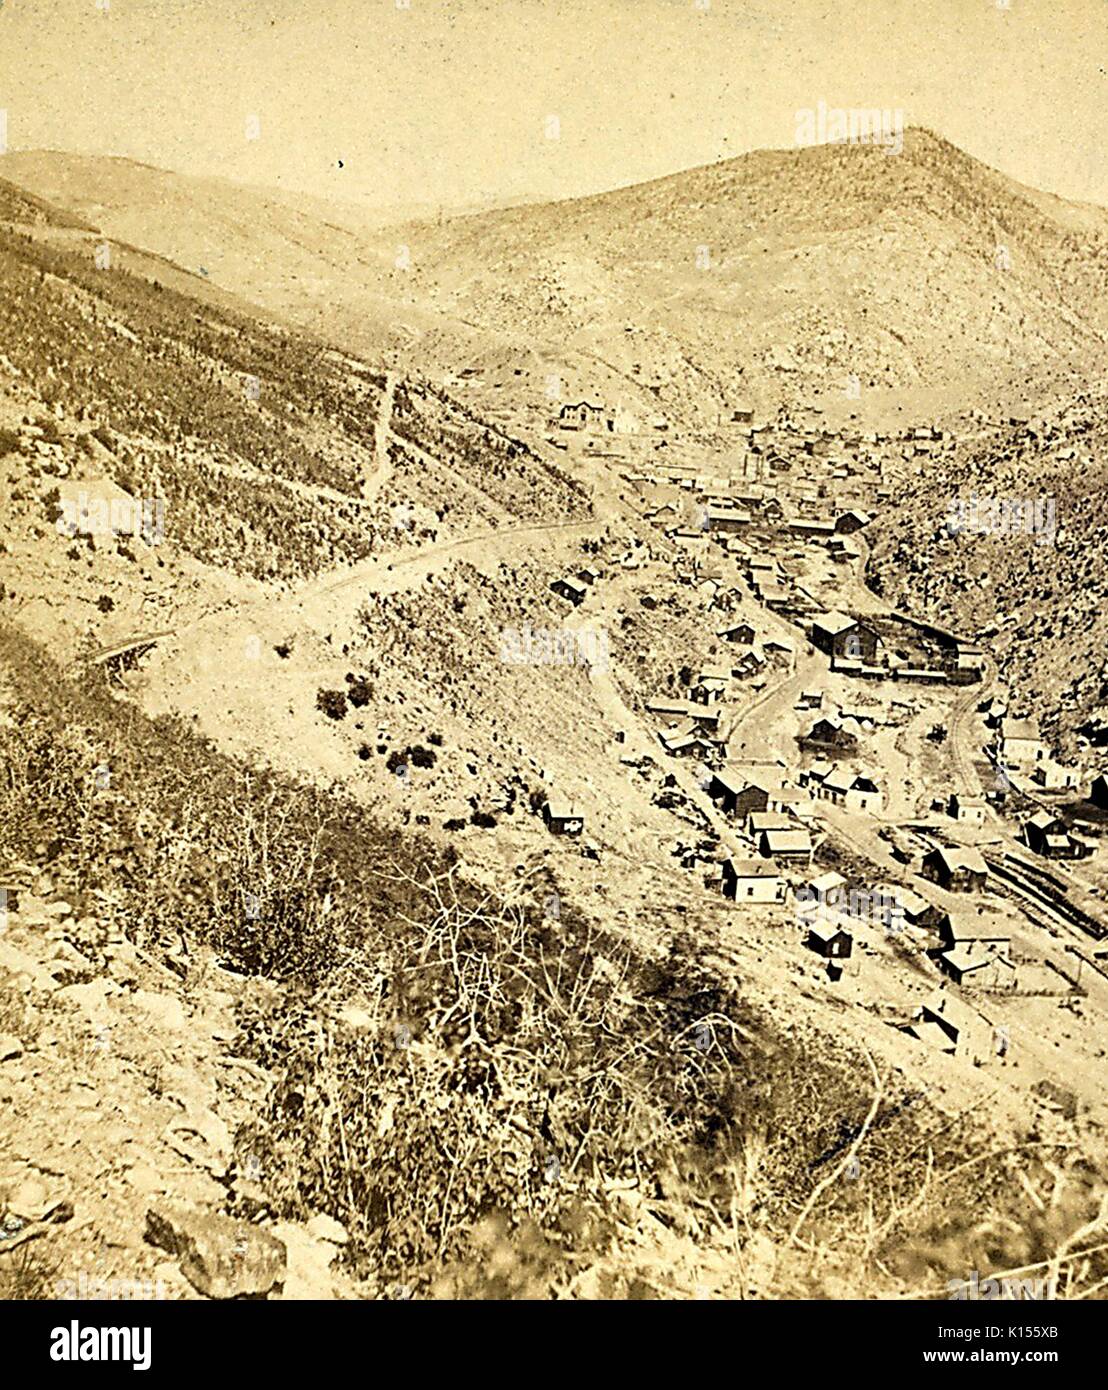 Falco nero dal CCRR vie [Central Colorado Railroad], montagne rocciose, Colorado, 1881. Dalla Biblioteca Pubblica di New York. Foto Stock